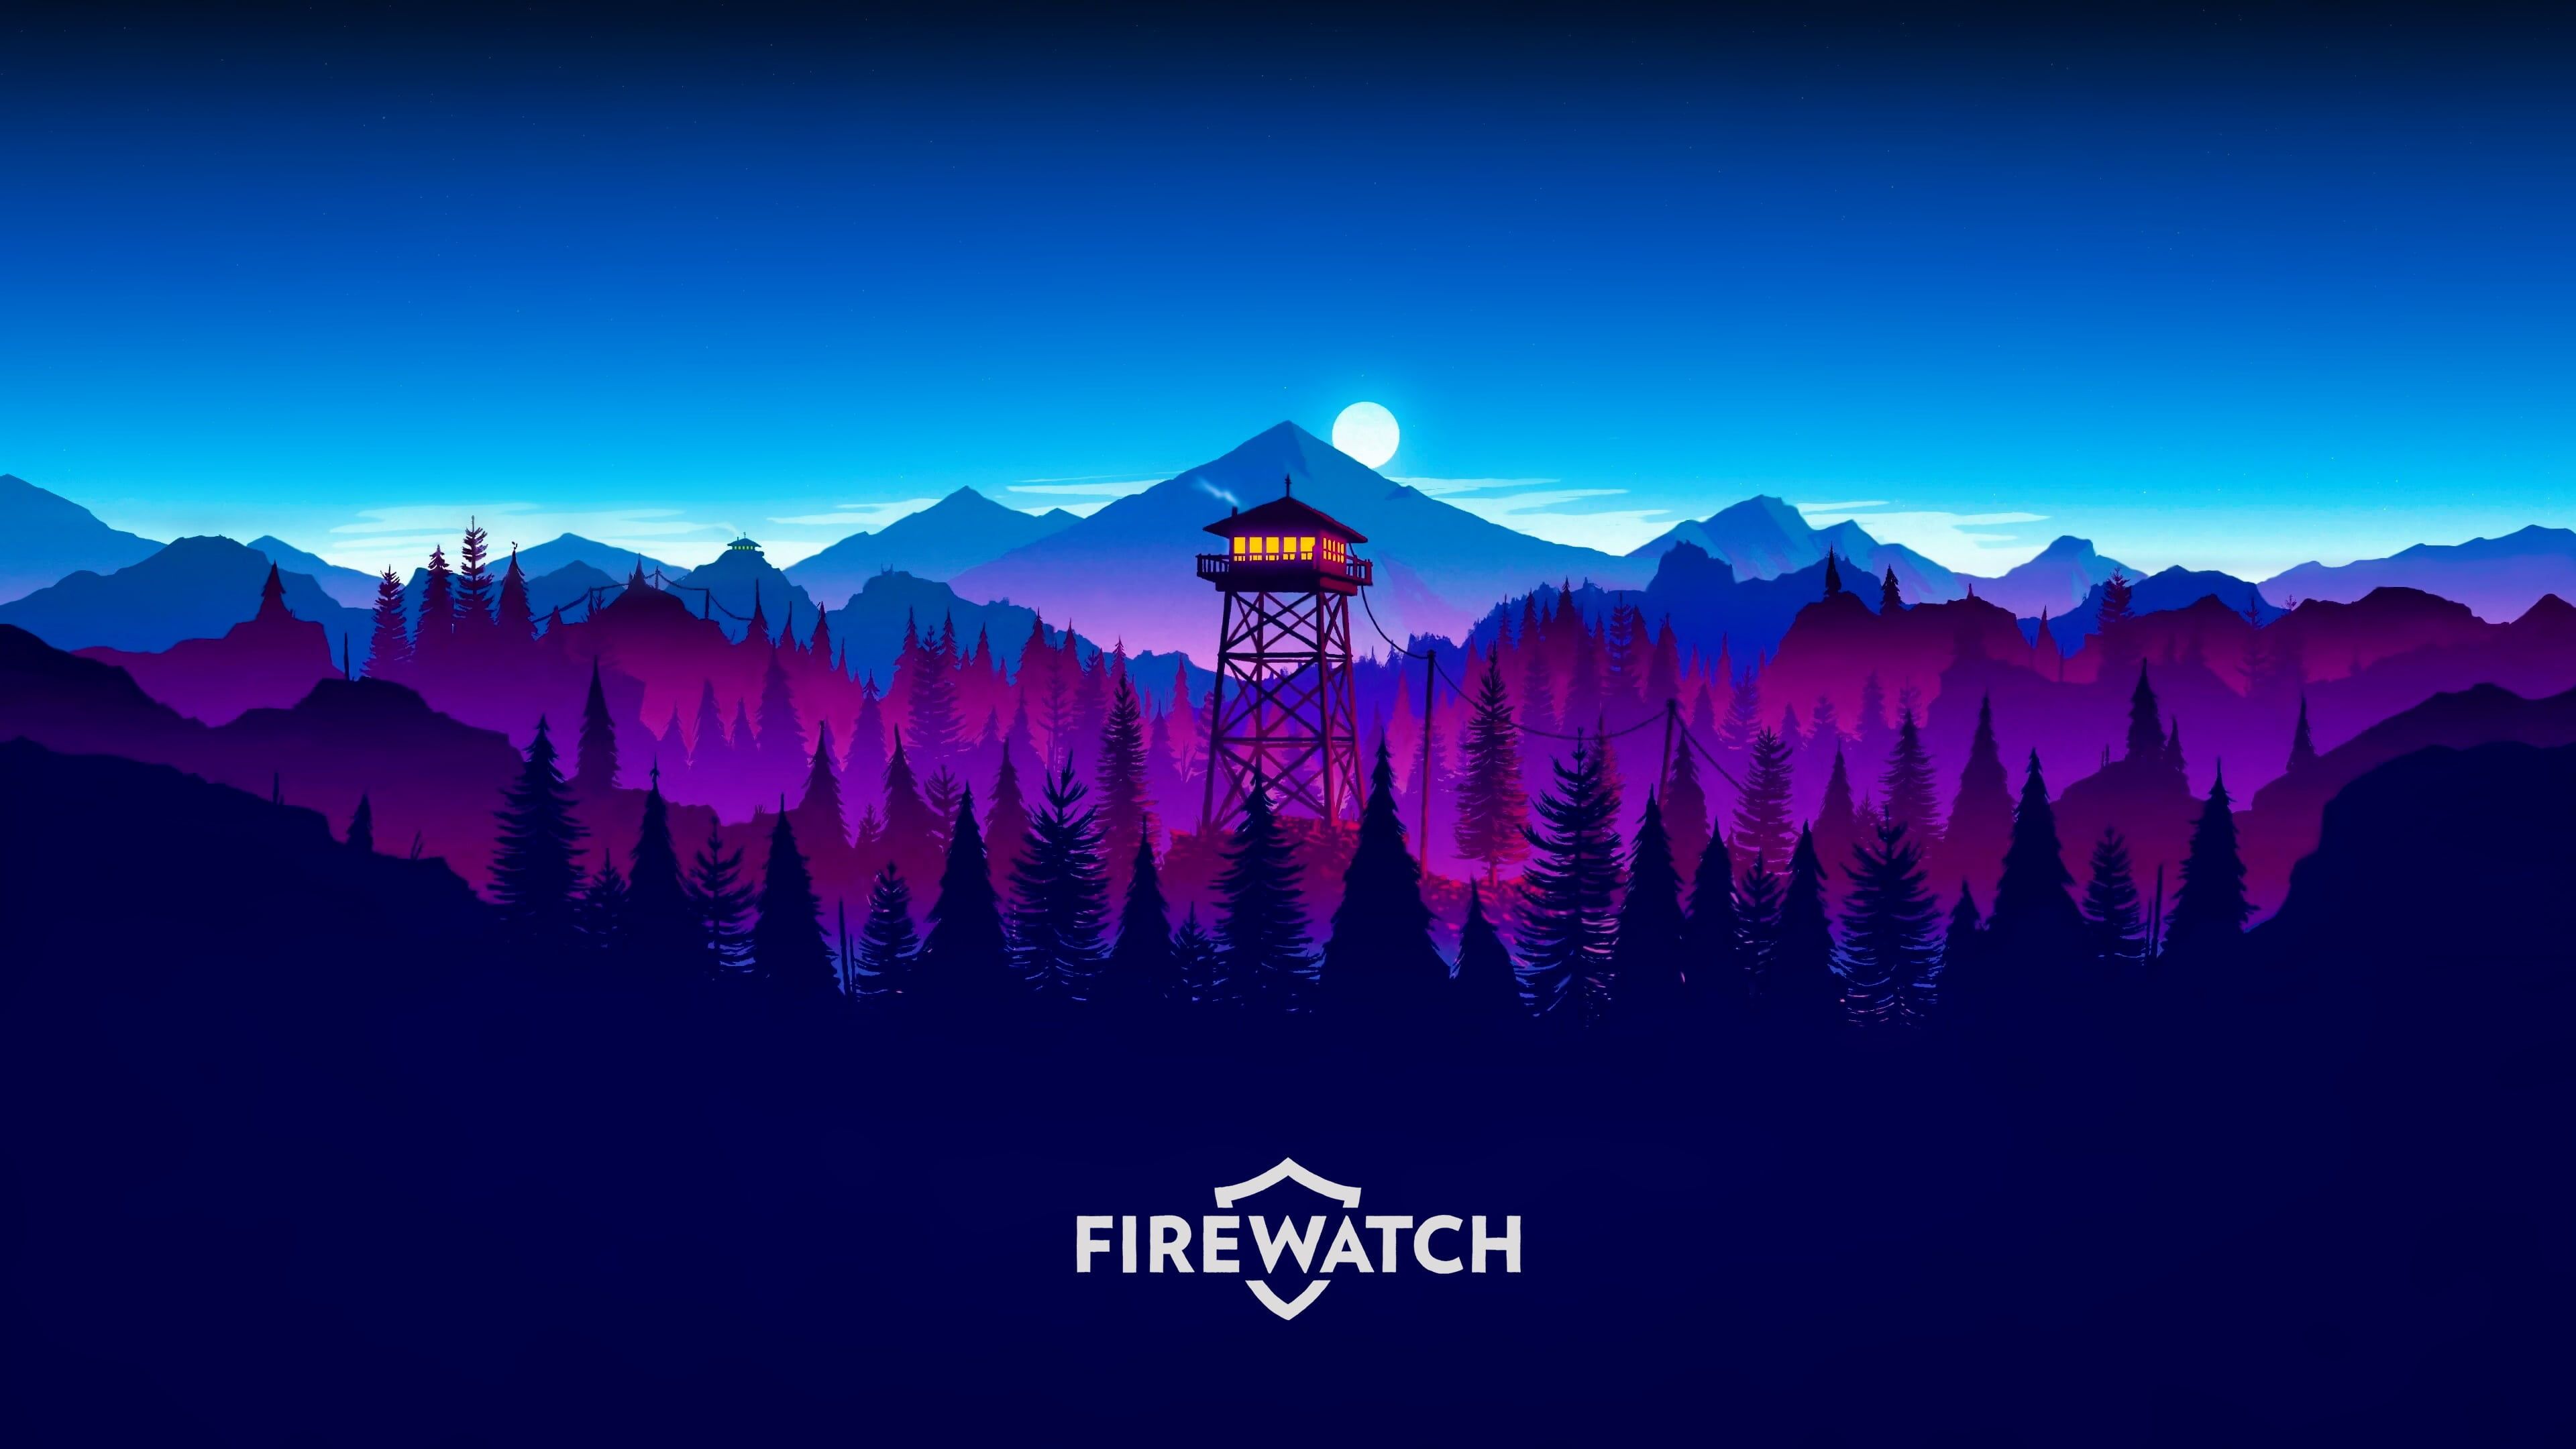 Firewatch digital wallpaper, purple and blue mountains illustration #Firewatch video games #forest #natu. Sunset artwork, Desktop wallpaper art, Digital wallpaper